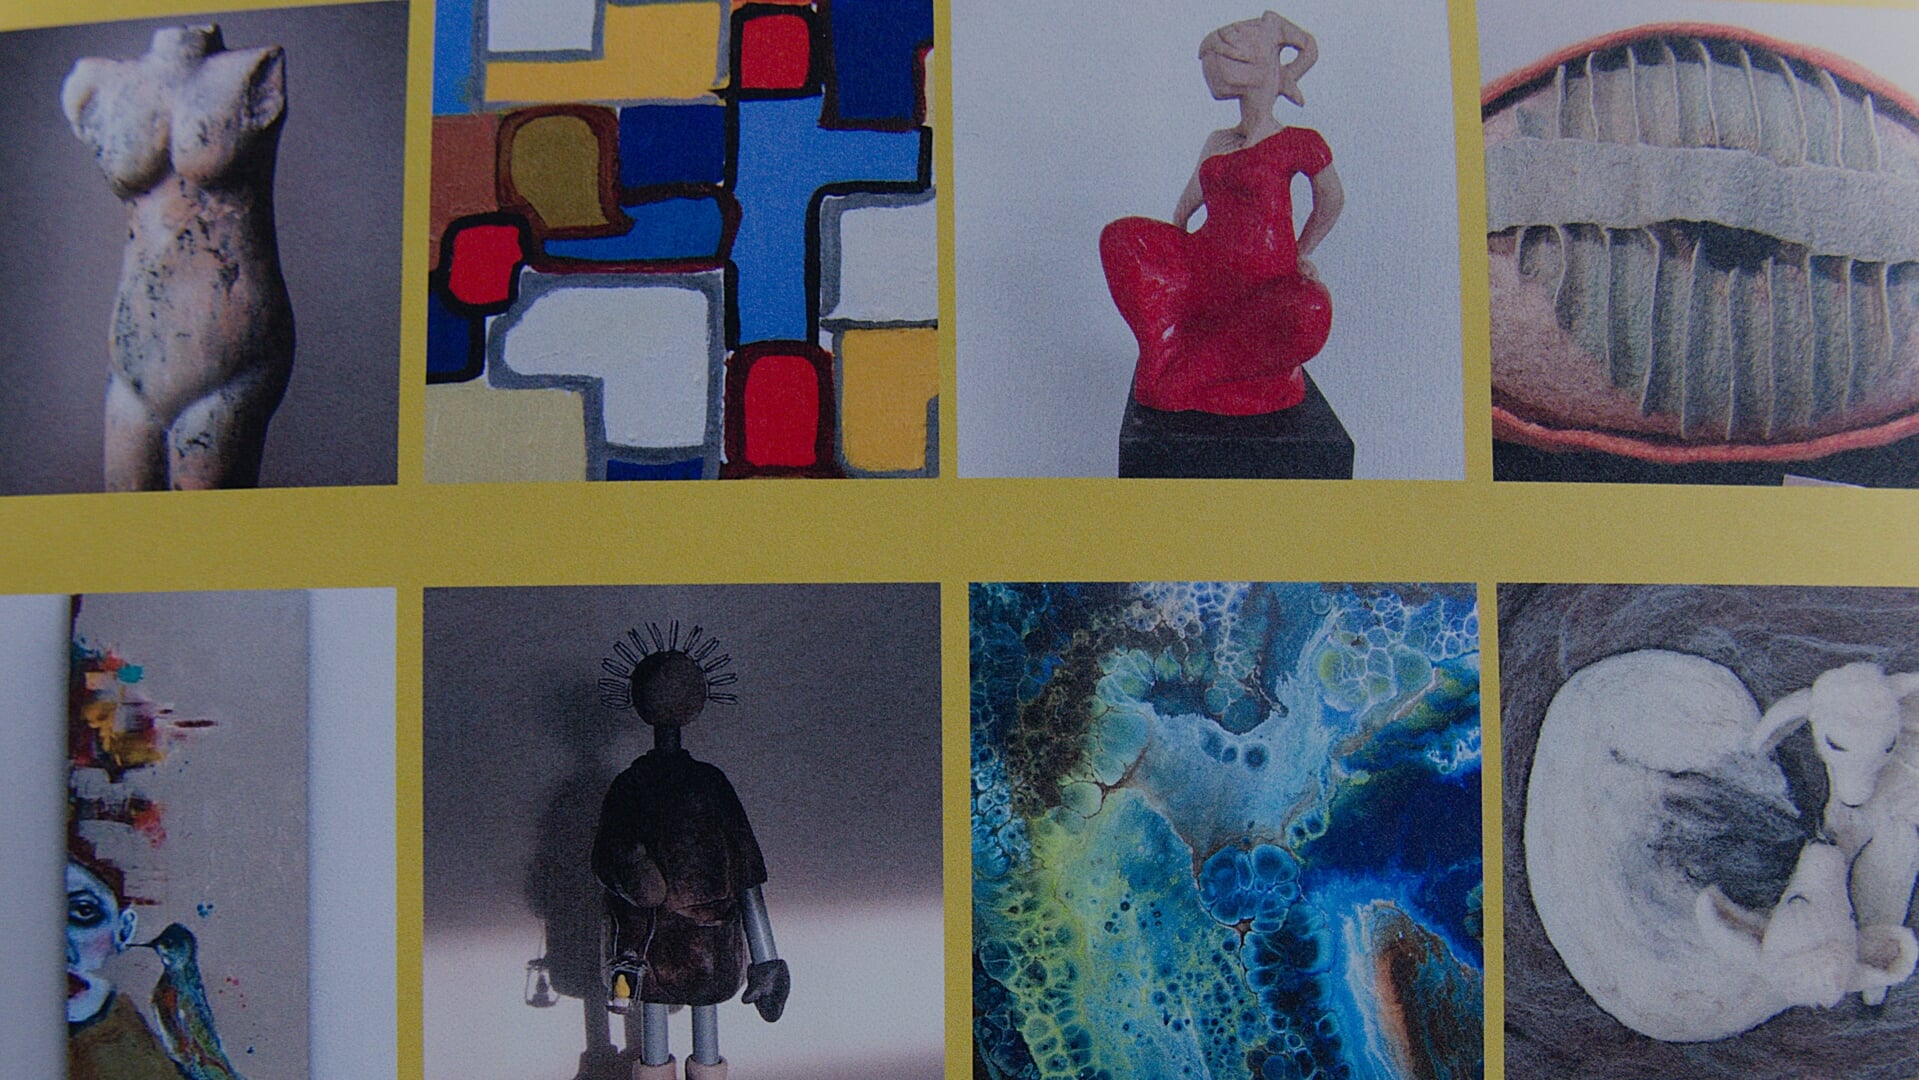  Enkele werken die tijdens de expositie te bewonderen zijn.